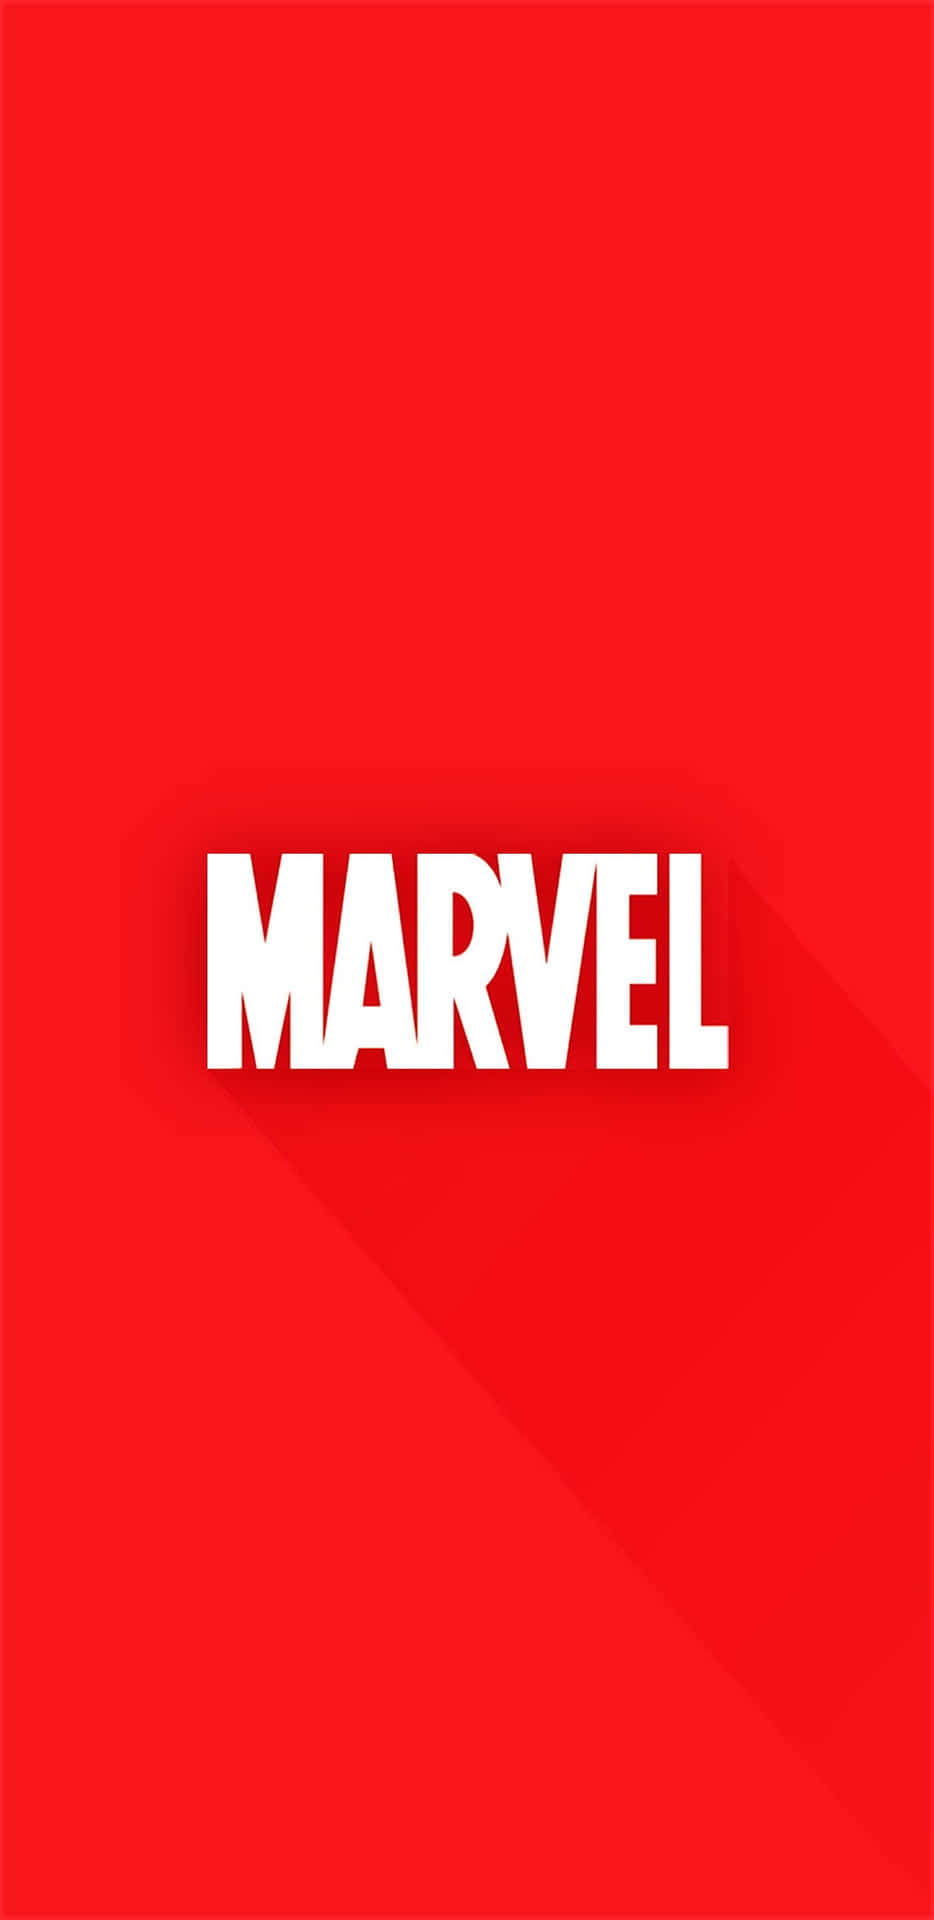 Pixel3xl Marvel Hintergrund In Plain Rot.